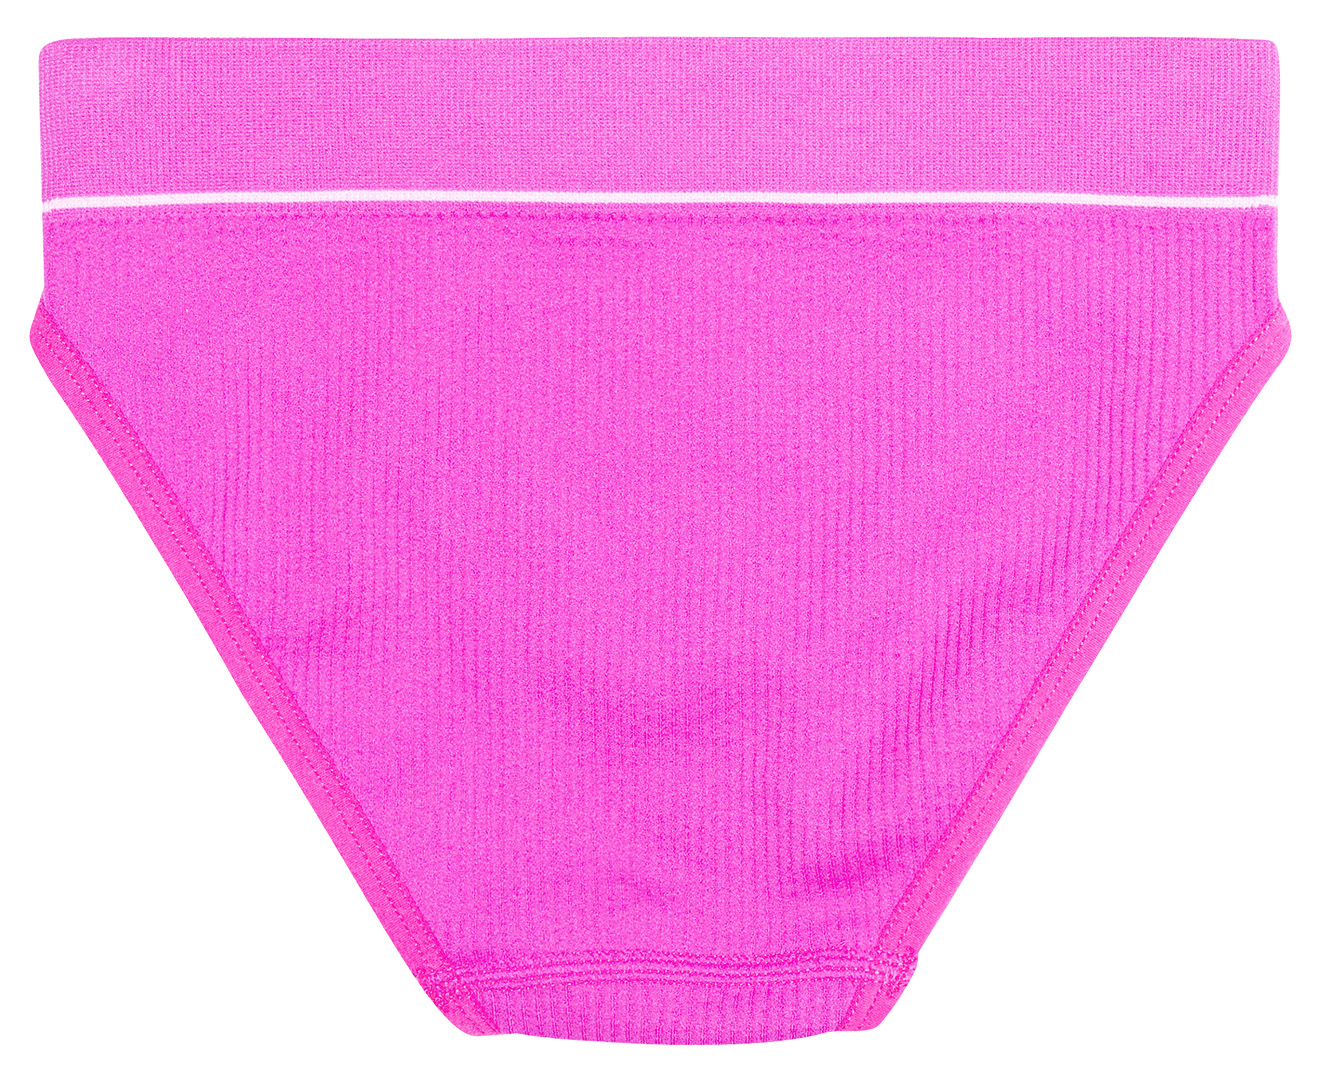 Bonds Retro Rib Bikini Briefs 2 Pack - Teal/Pink